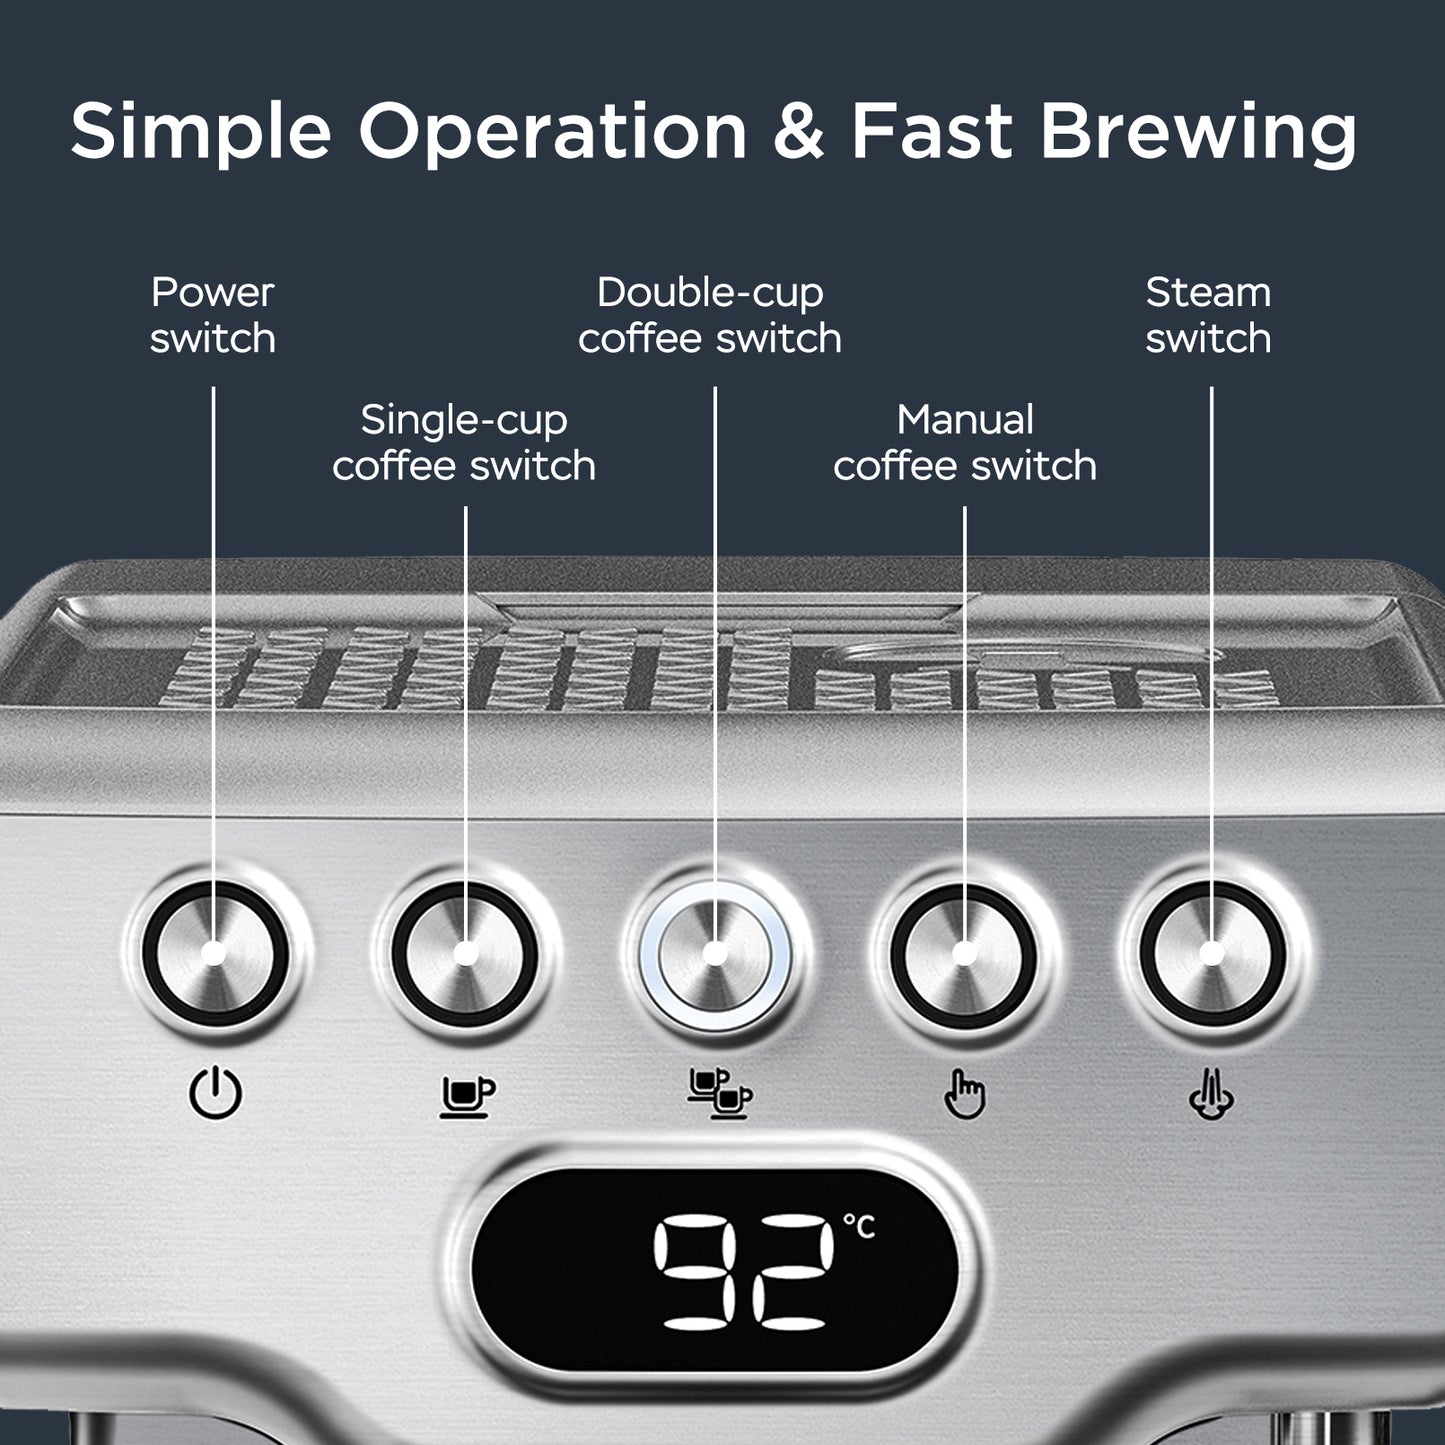 Espresso Machine, 20 Bar Espresso Machine With Milk Frothier For Latte, Cappuccino, Macchiato, For Home Espresso Maker, 1.8L Water Tank, Stainless Steel.